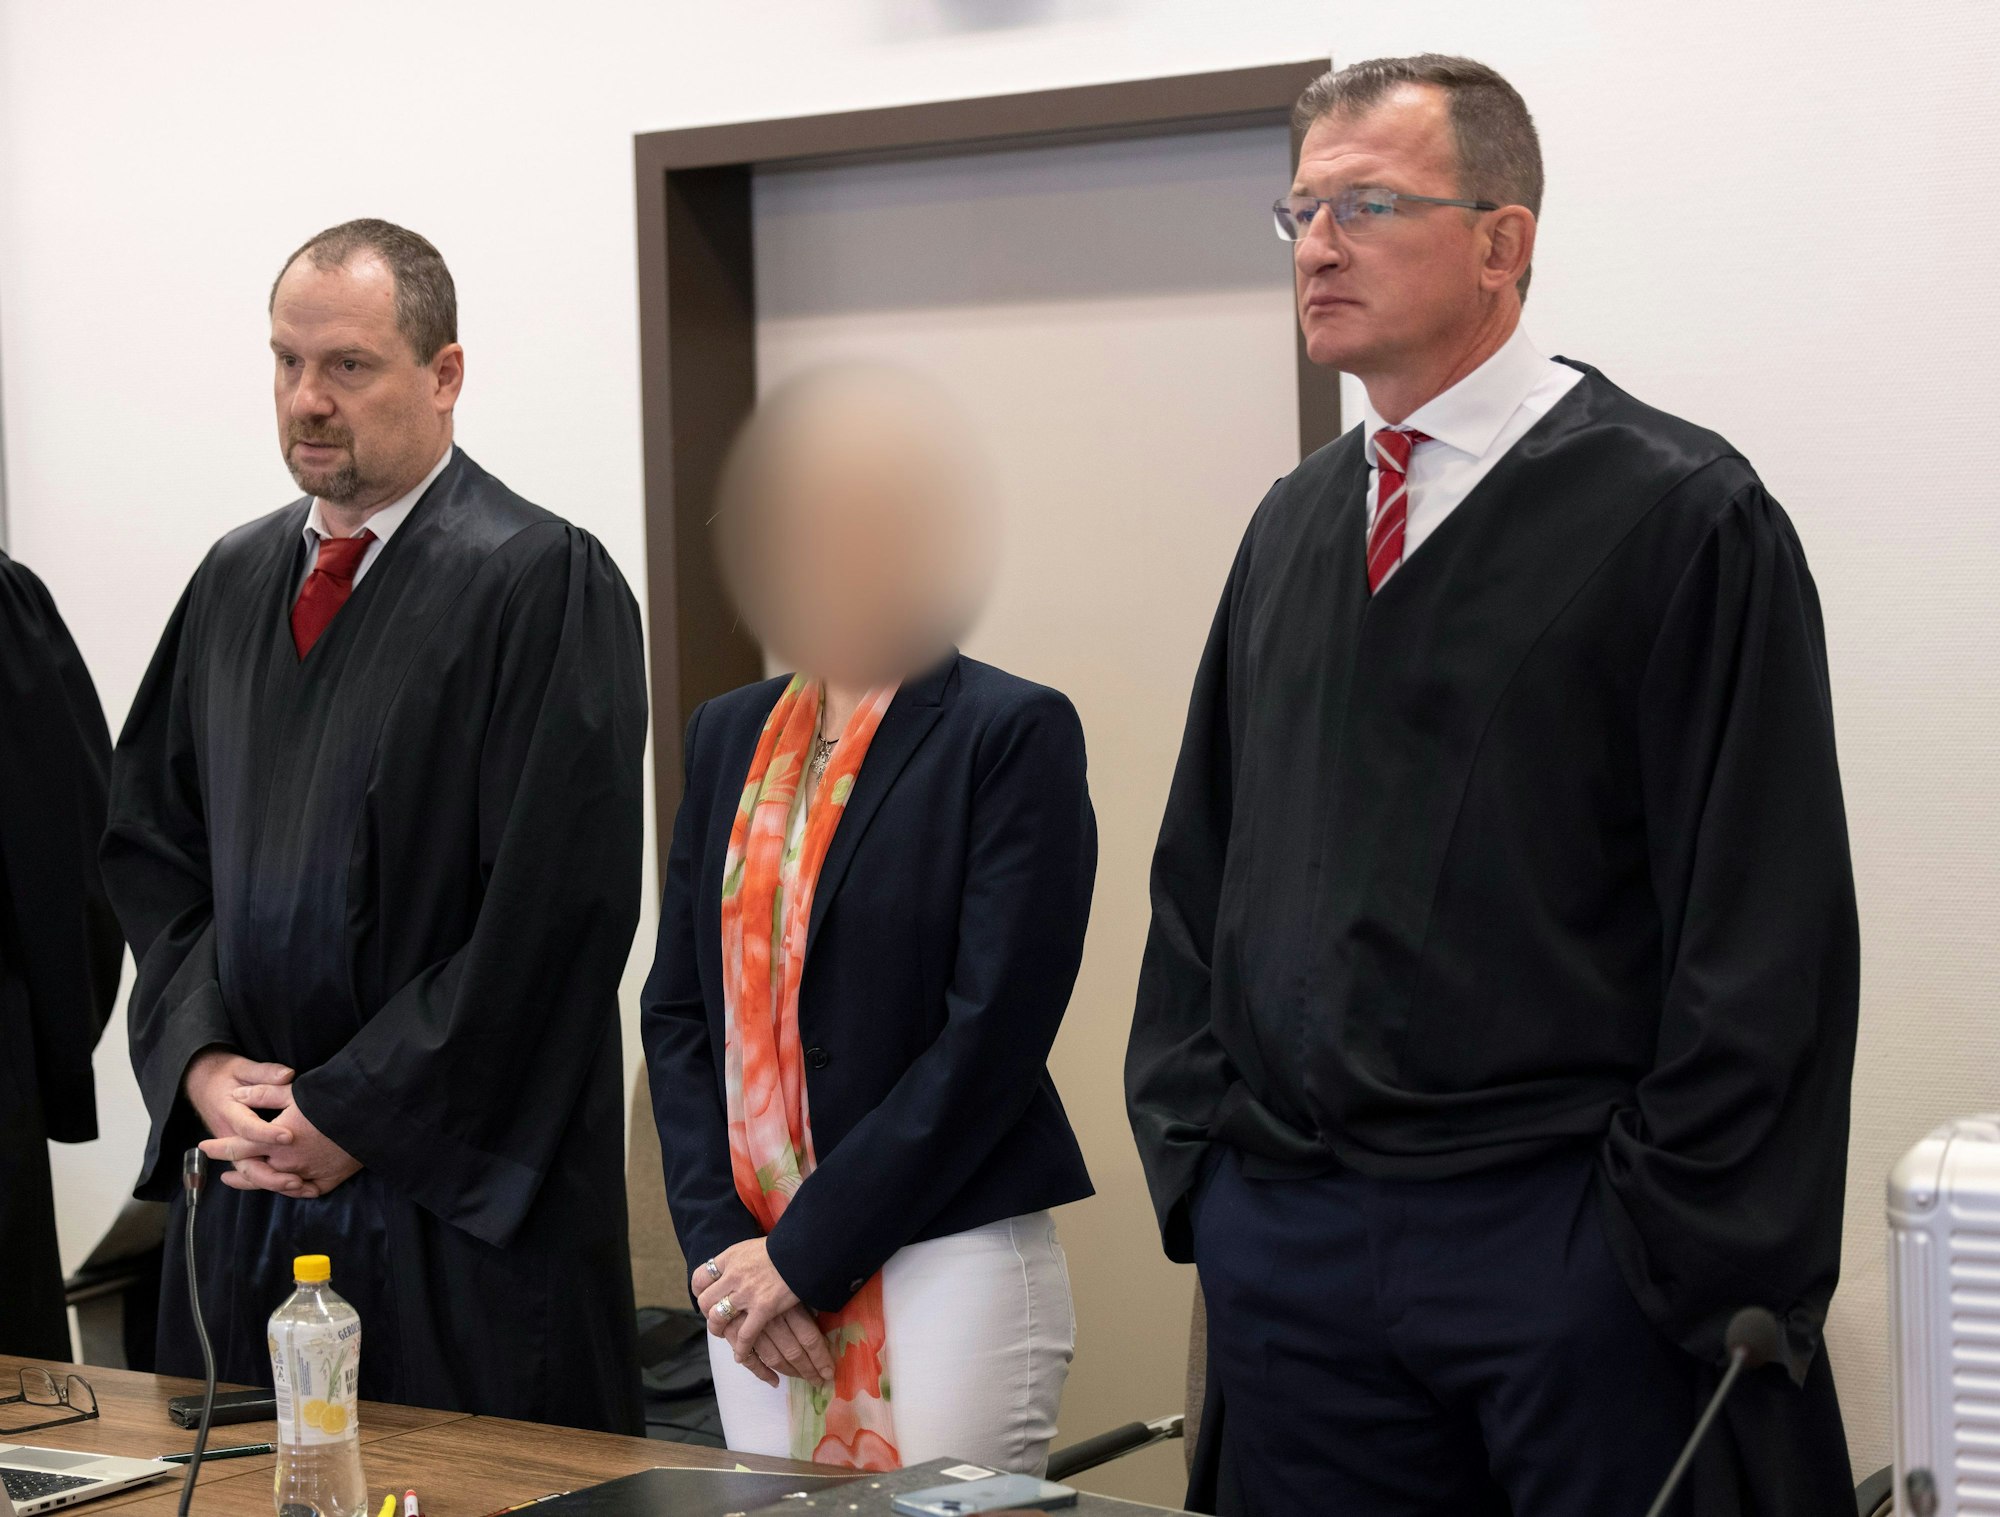 Die angeklagte Apothekerin mit ihren Anwälten beim Prozessauftakt im Landgericht Köln.